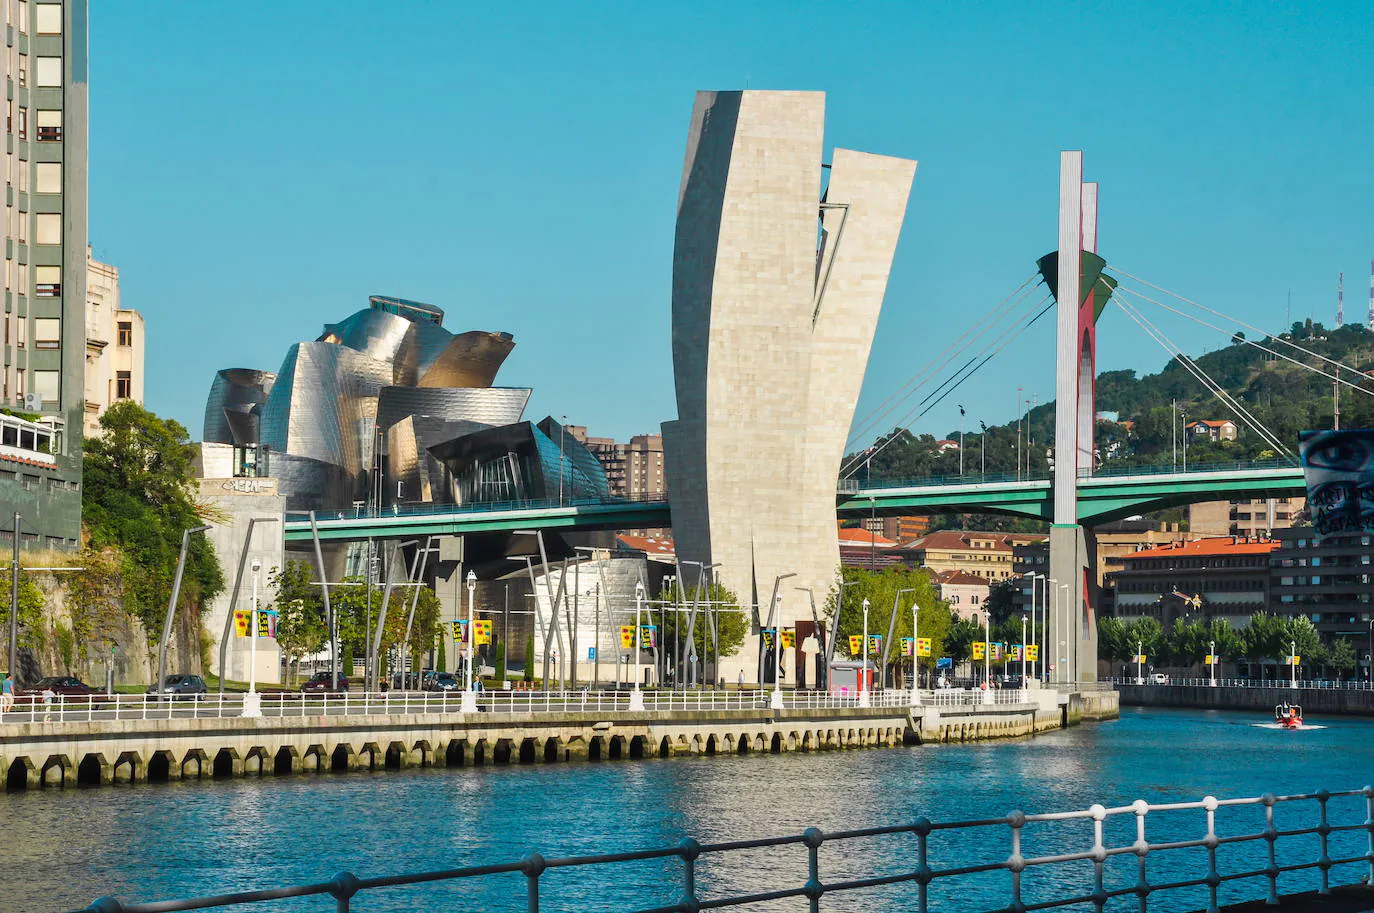 Bilbao (Diseño) | Bilbao ha experimentado grandes transformaciones sociales, culturales y económicas. La creatividad es el eje central en su estrategia de desarrollo y, por ello, se ha convertido en un referente en el ámbito de la arquitectura, el diseño industrial y las nuevas tecnologías. Como Ciudad Creativa prevé promover políticas urbanas orientadas al diseño, albergar eventos internacionales e integrar objetivos en relación con las industrias culturales. Combina a la perfección lo típico de una localidad urbana con señas de identidad propias.6